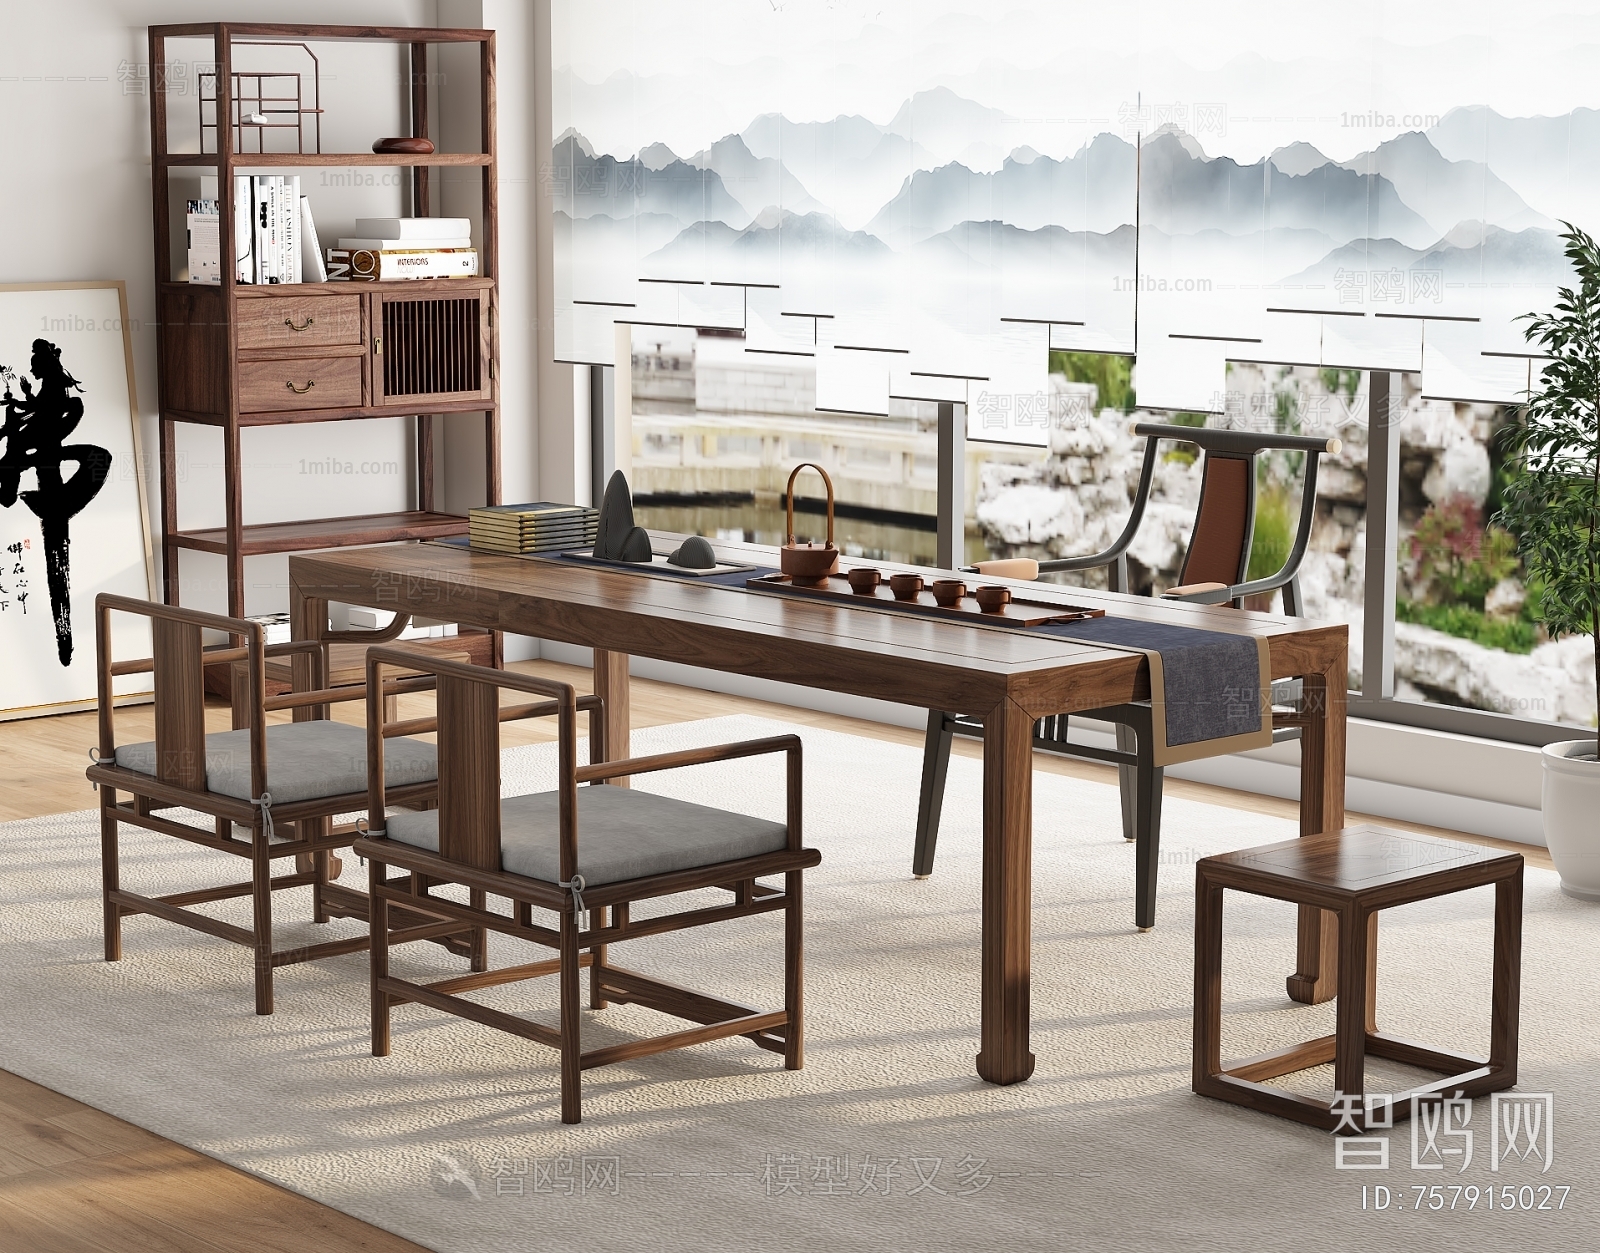 新中式实木茶桌椅坐凳组合